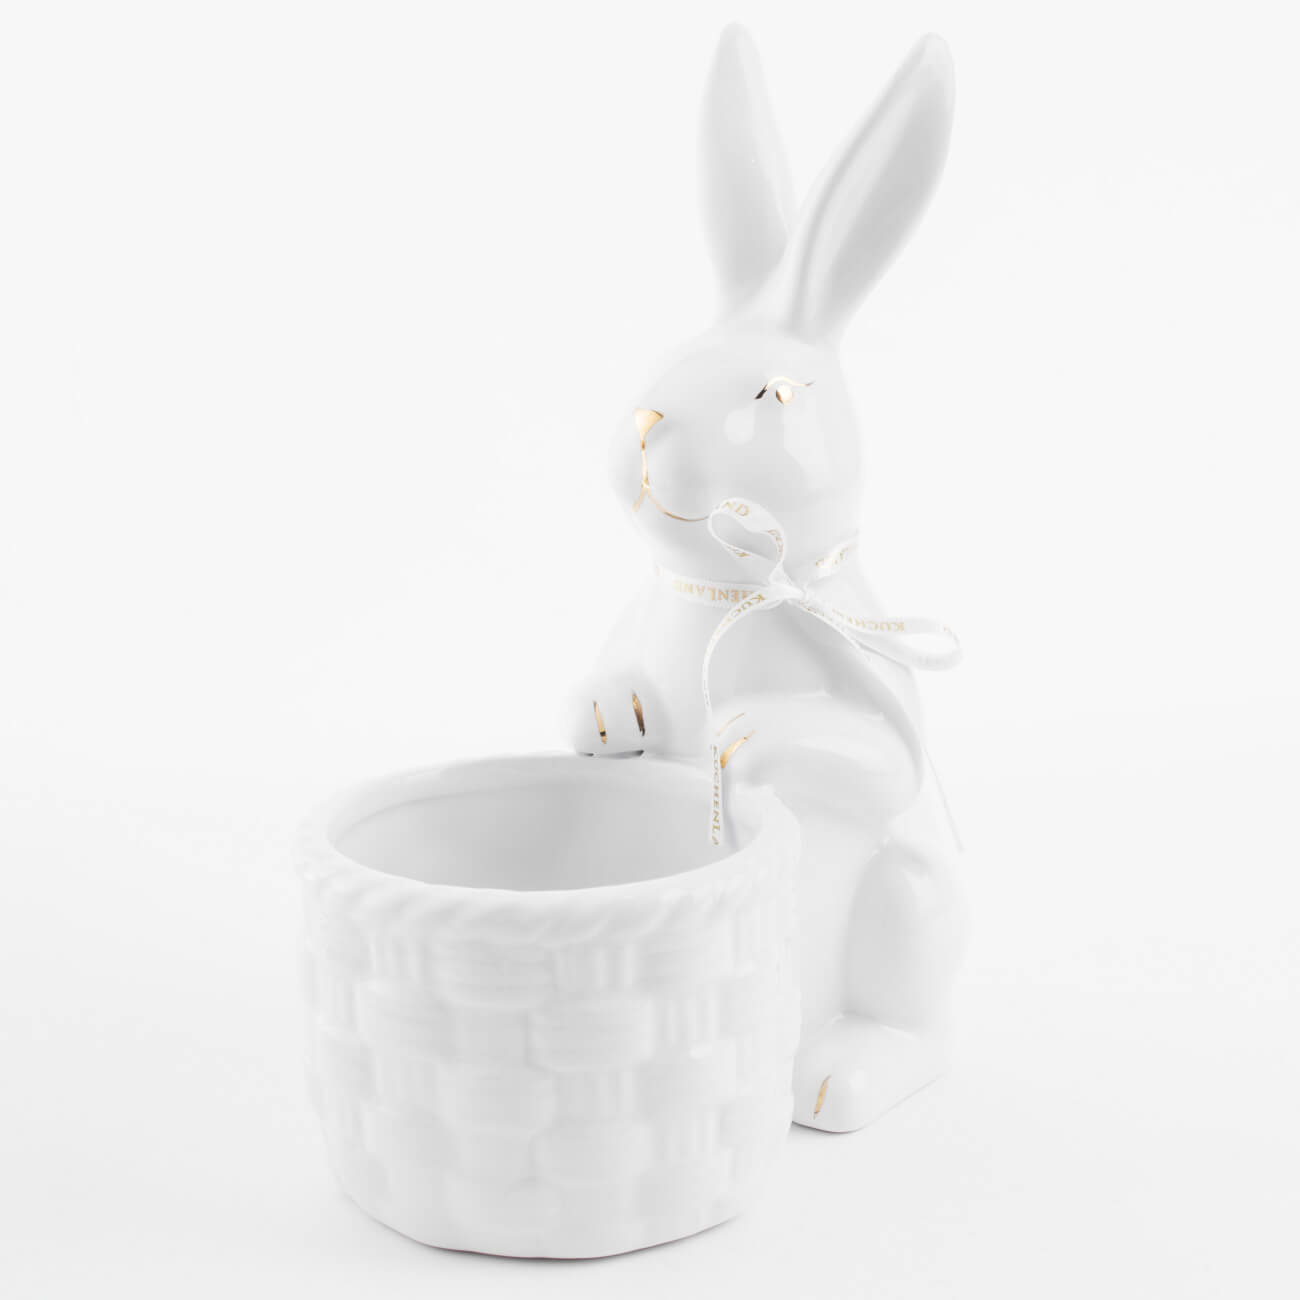 Конфетница, 18x23 см, керамика, бело-золотистая, Кролик с плетенной корзиной, Easter gold конфетница сапожок с бомбошками